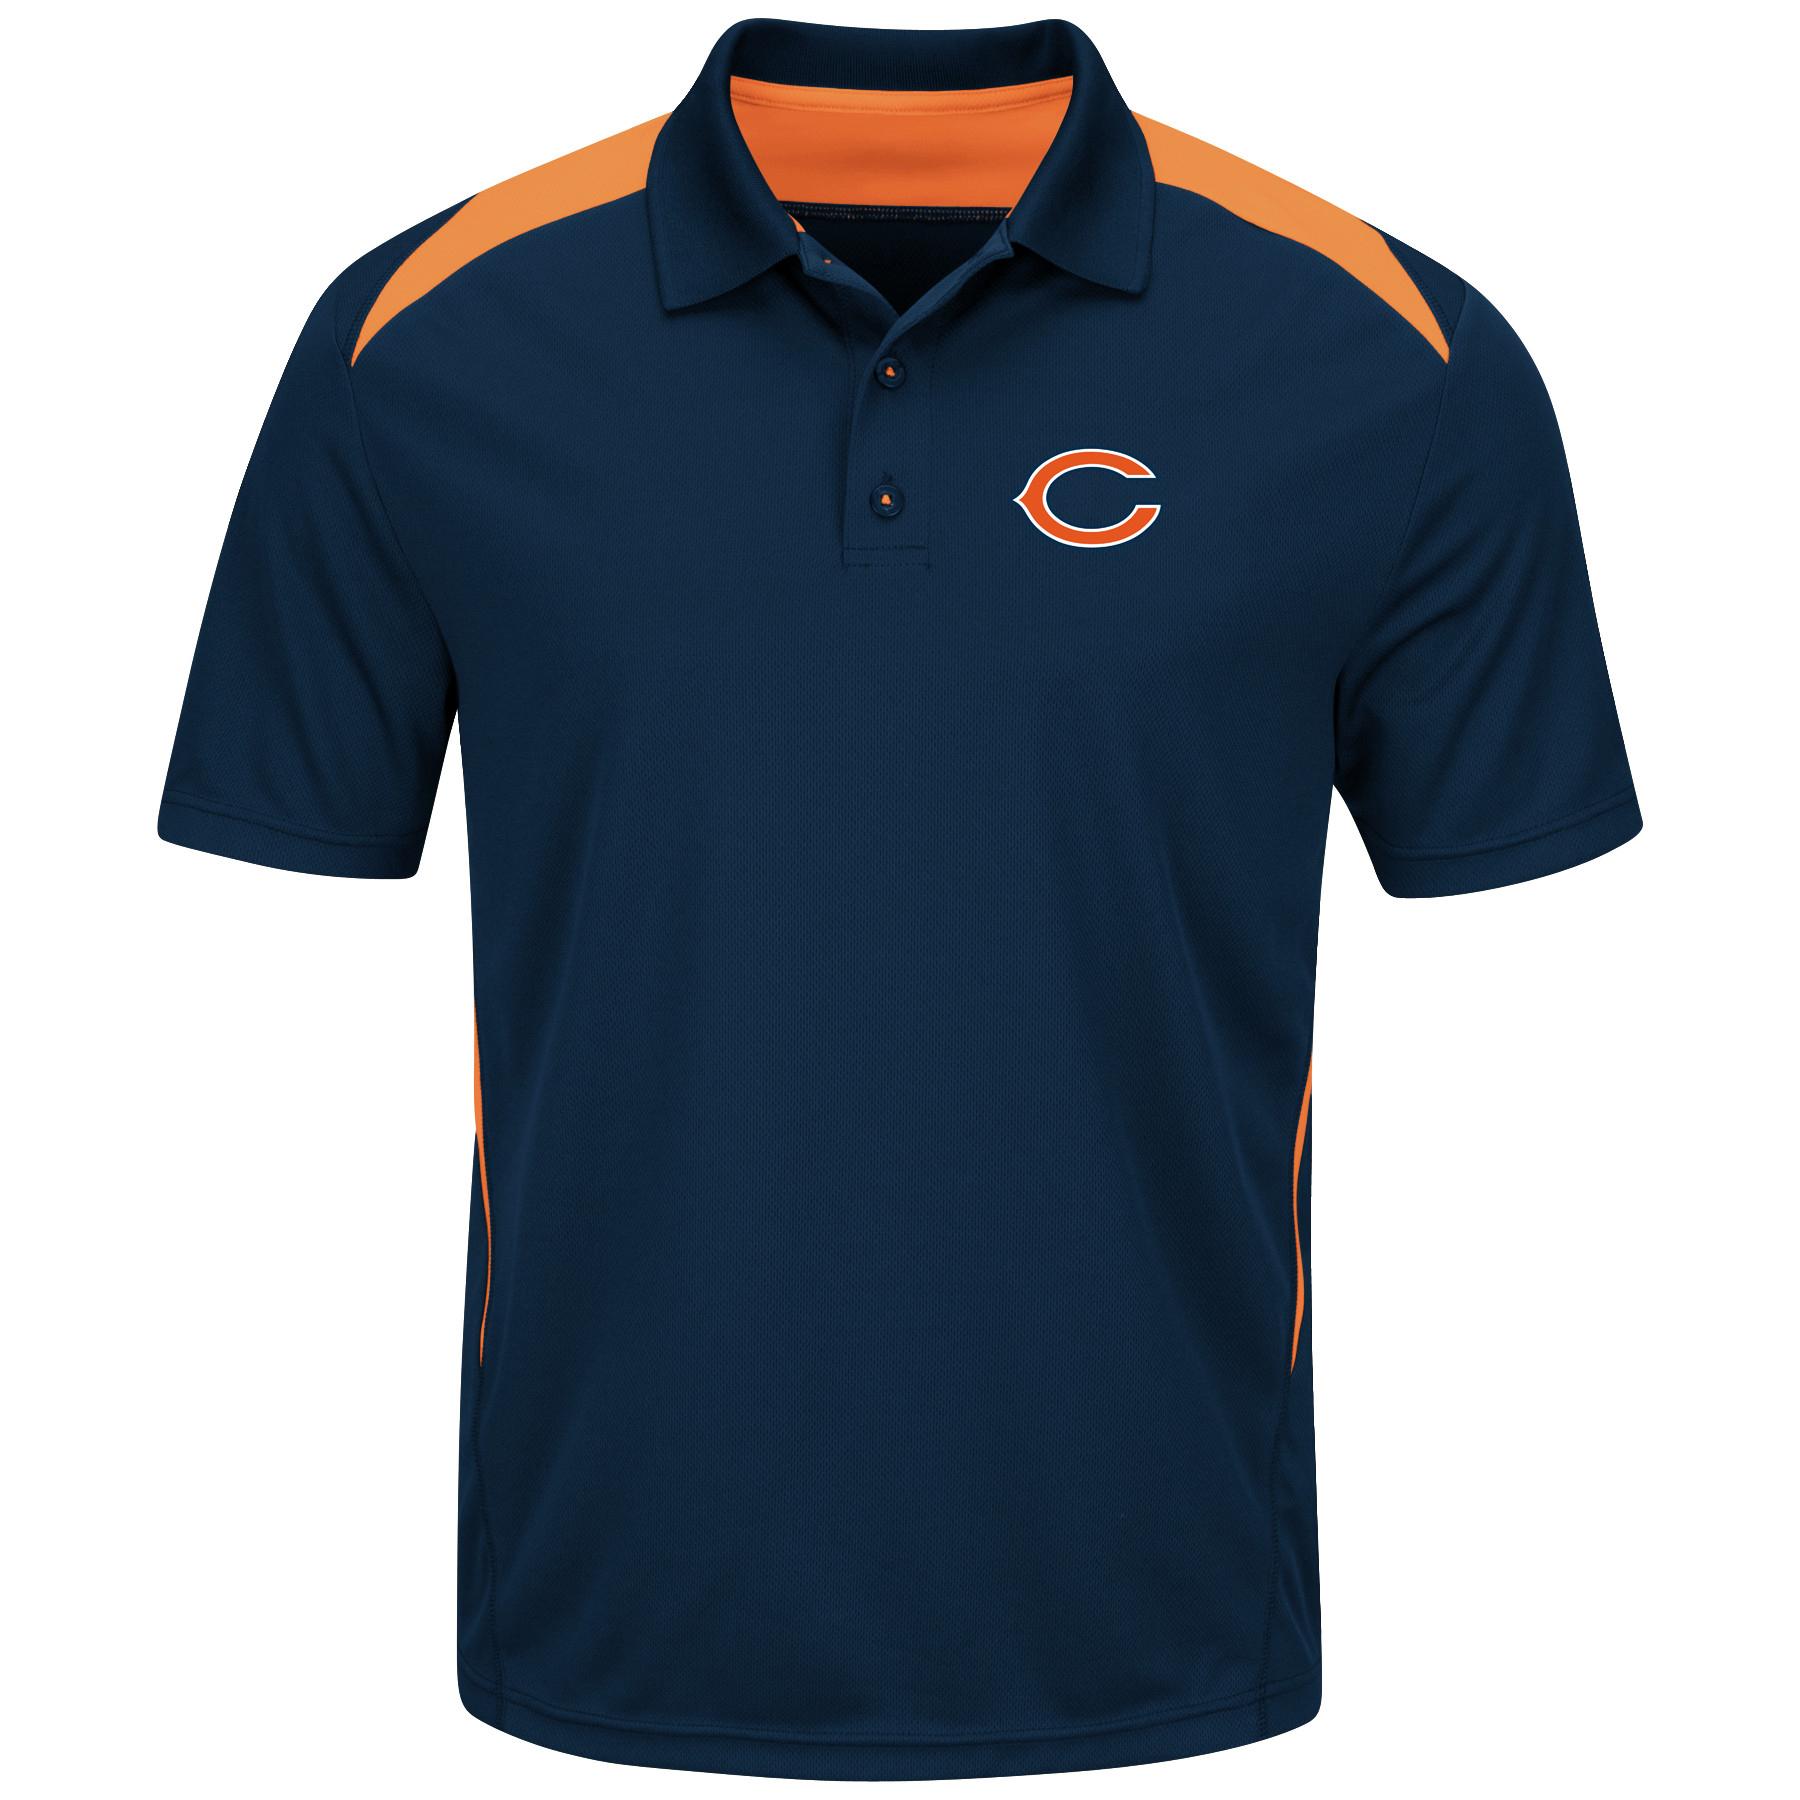 NFL Men's Polo Shirt - Chicago Bears